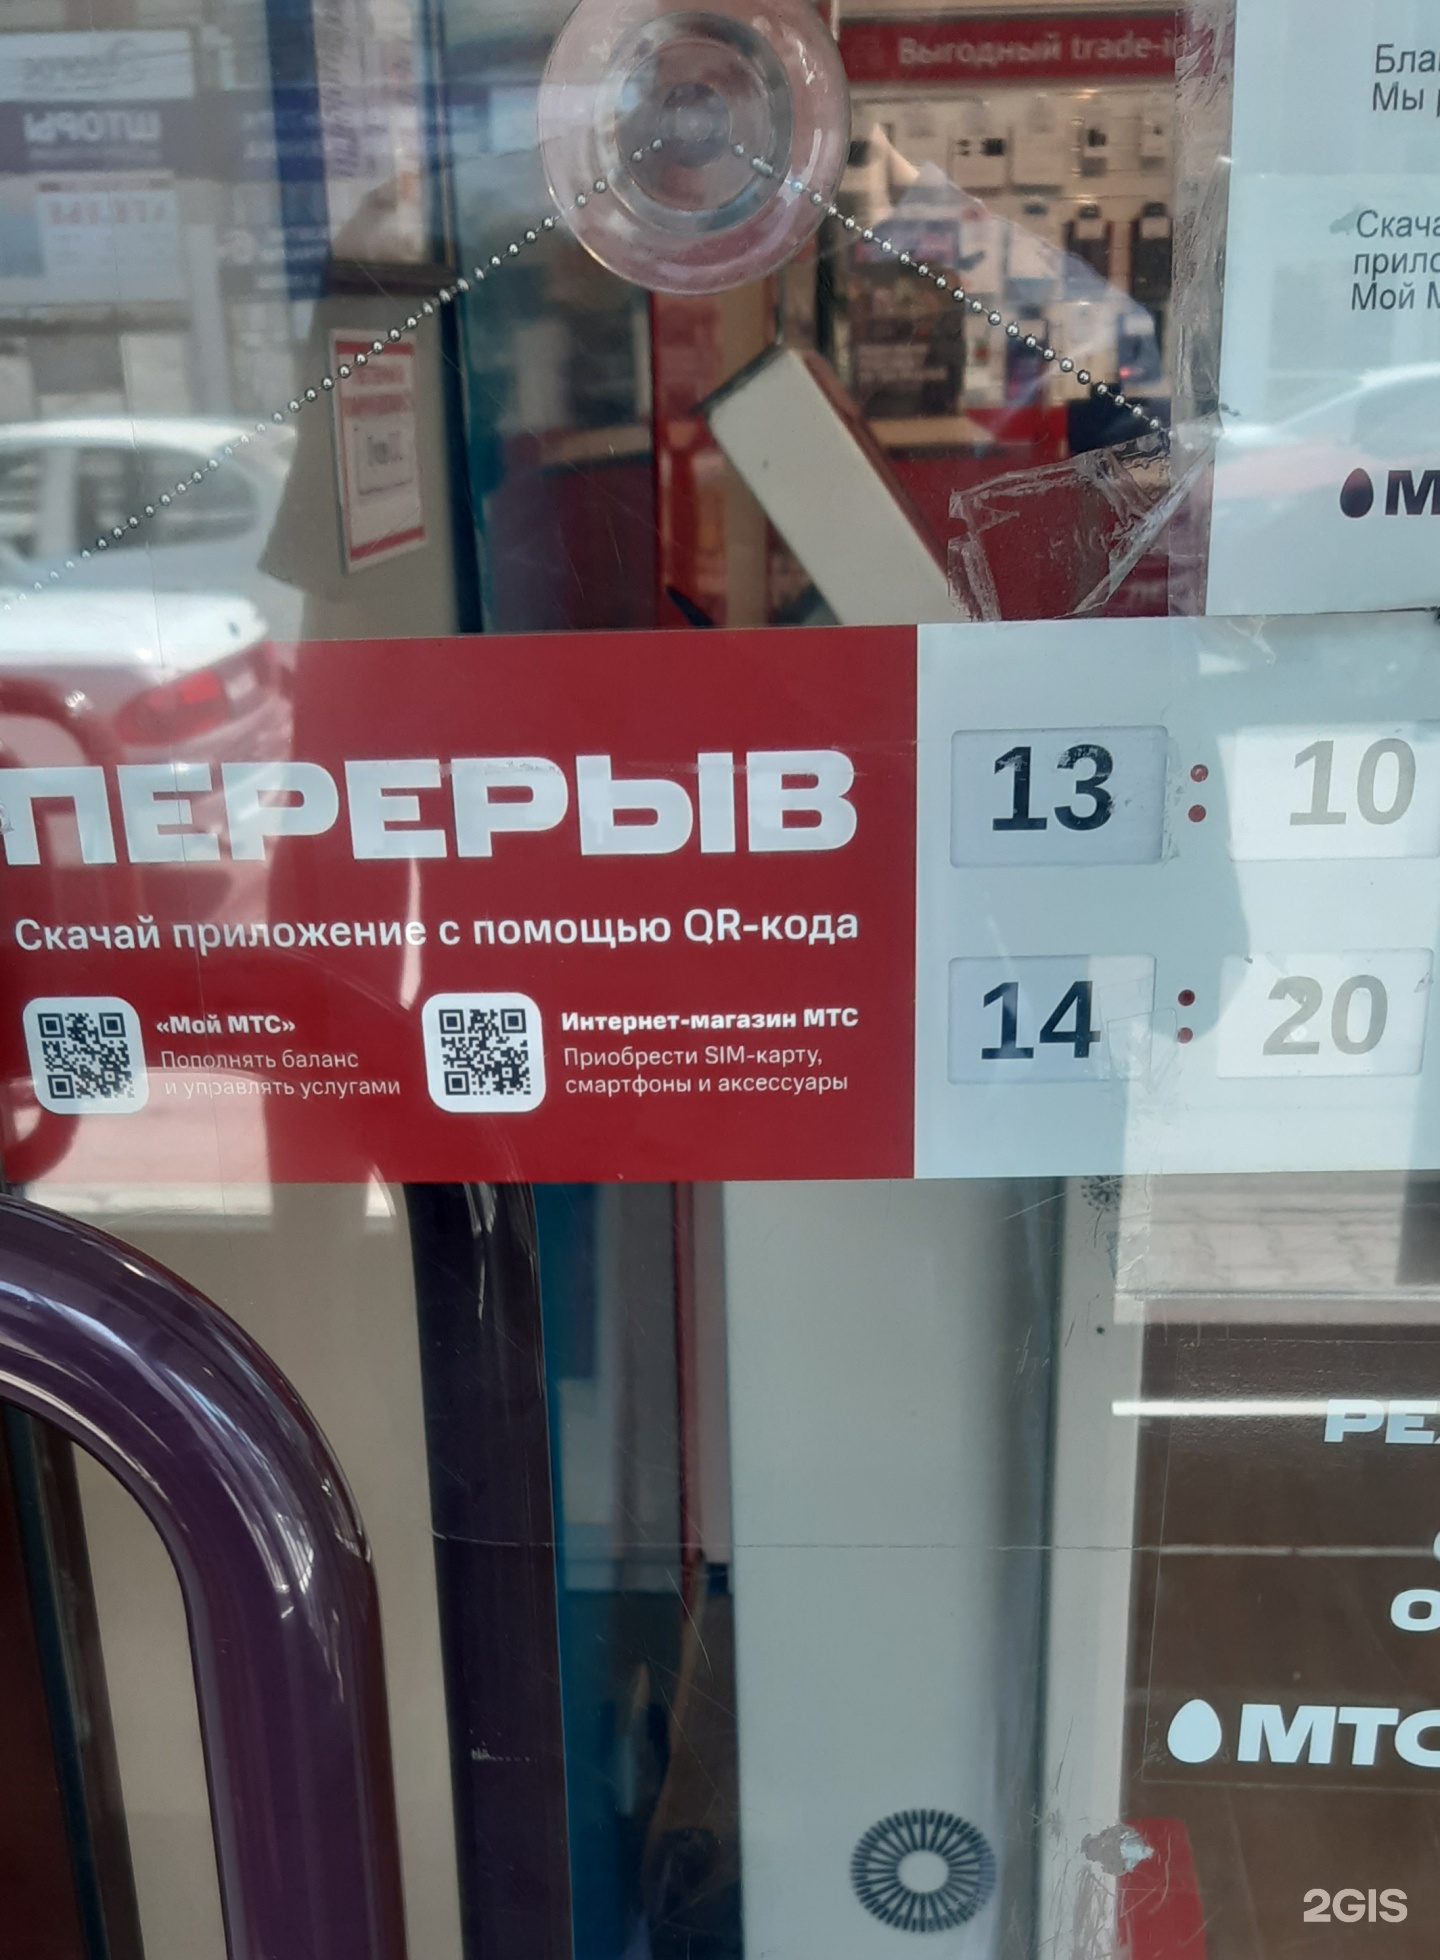 Мтс Магазин Сотовых Новосибирск